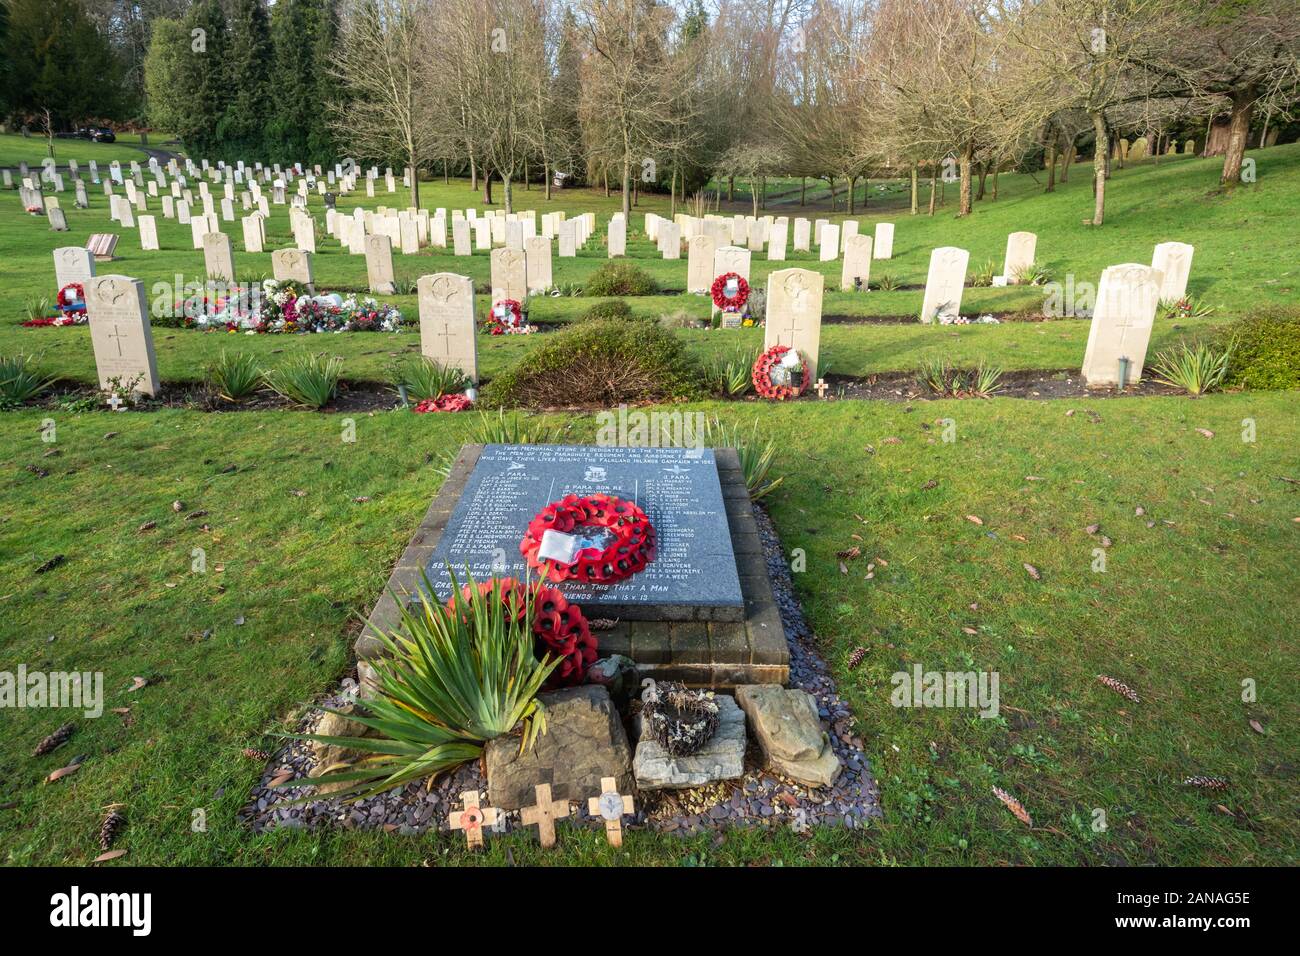 Cimetière militaire d'Aldershot avec les tombes de militaires du Commonwealth britannique et les femmes et, Hampshire, Royaume-Uni. Tombes de ceux tués dans la guerre des Malouines Banque D'Images